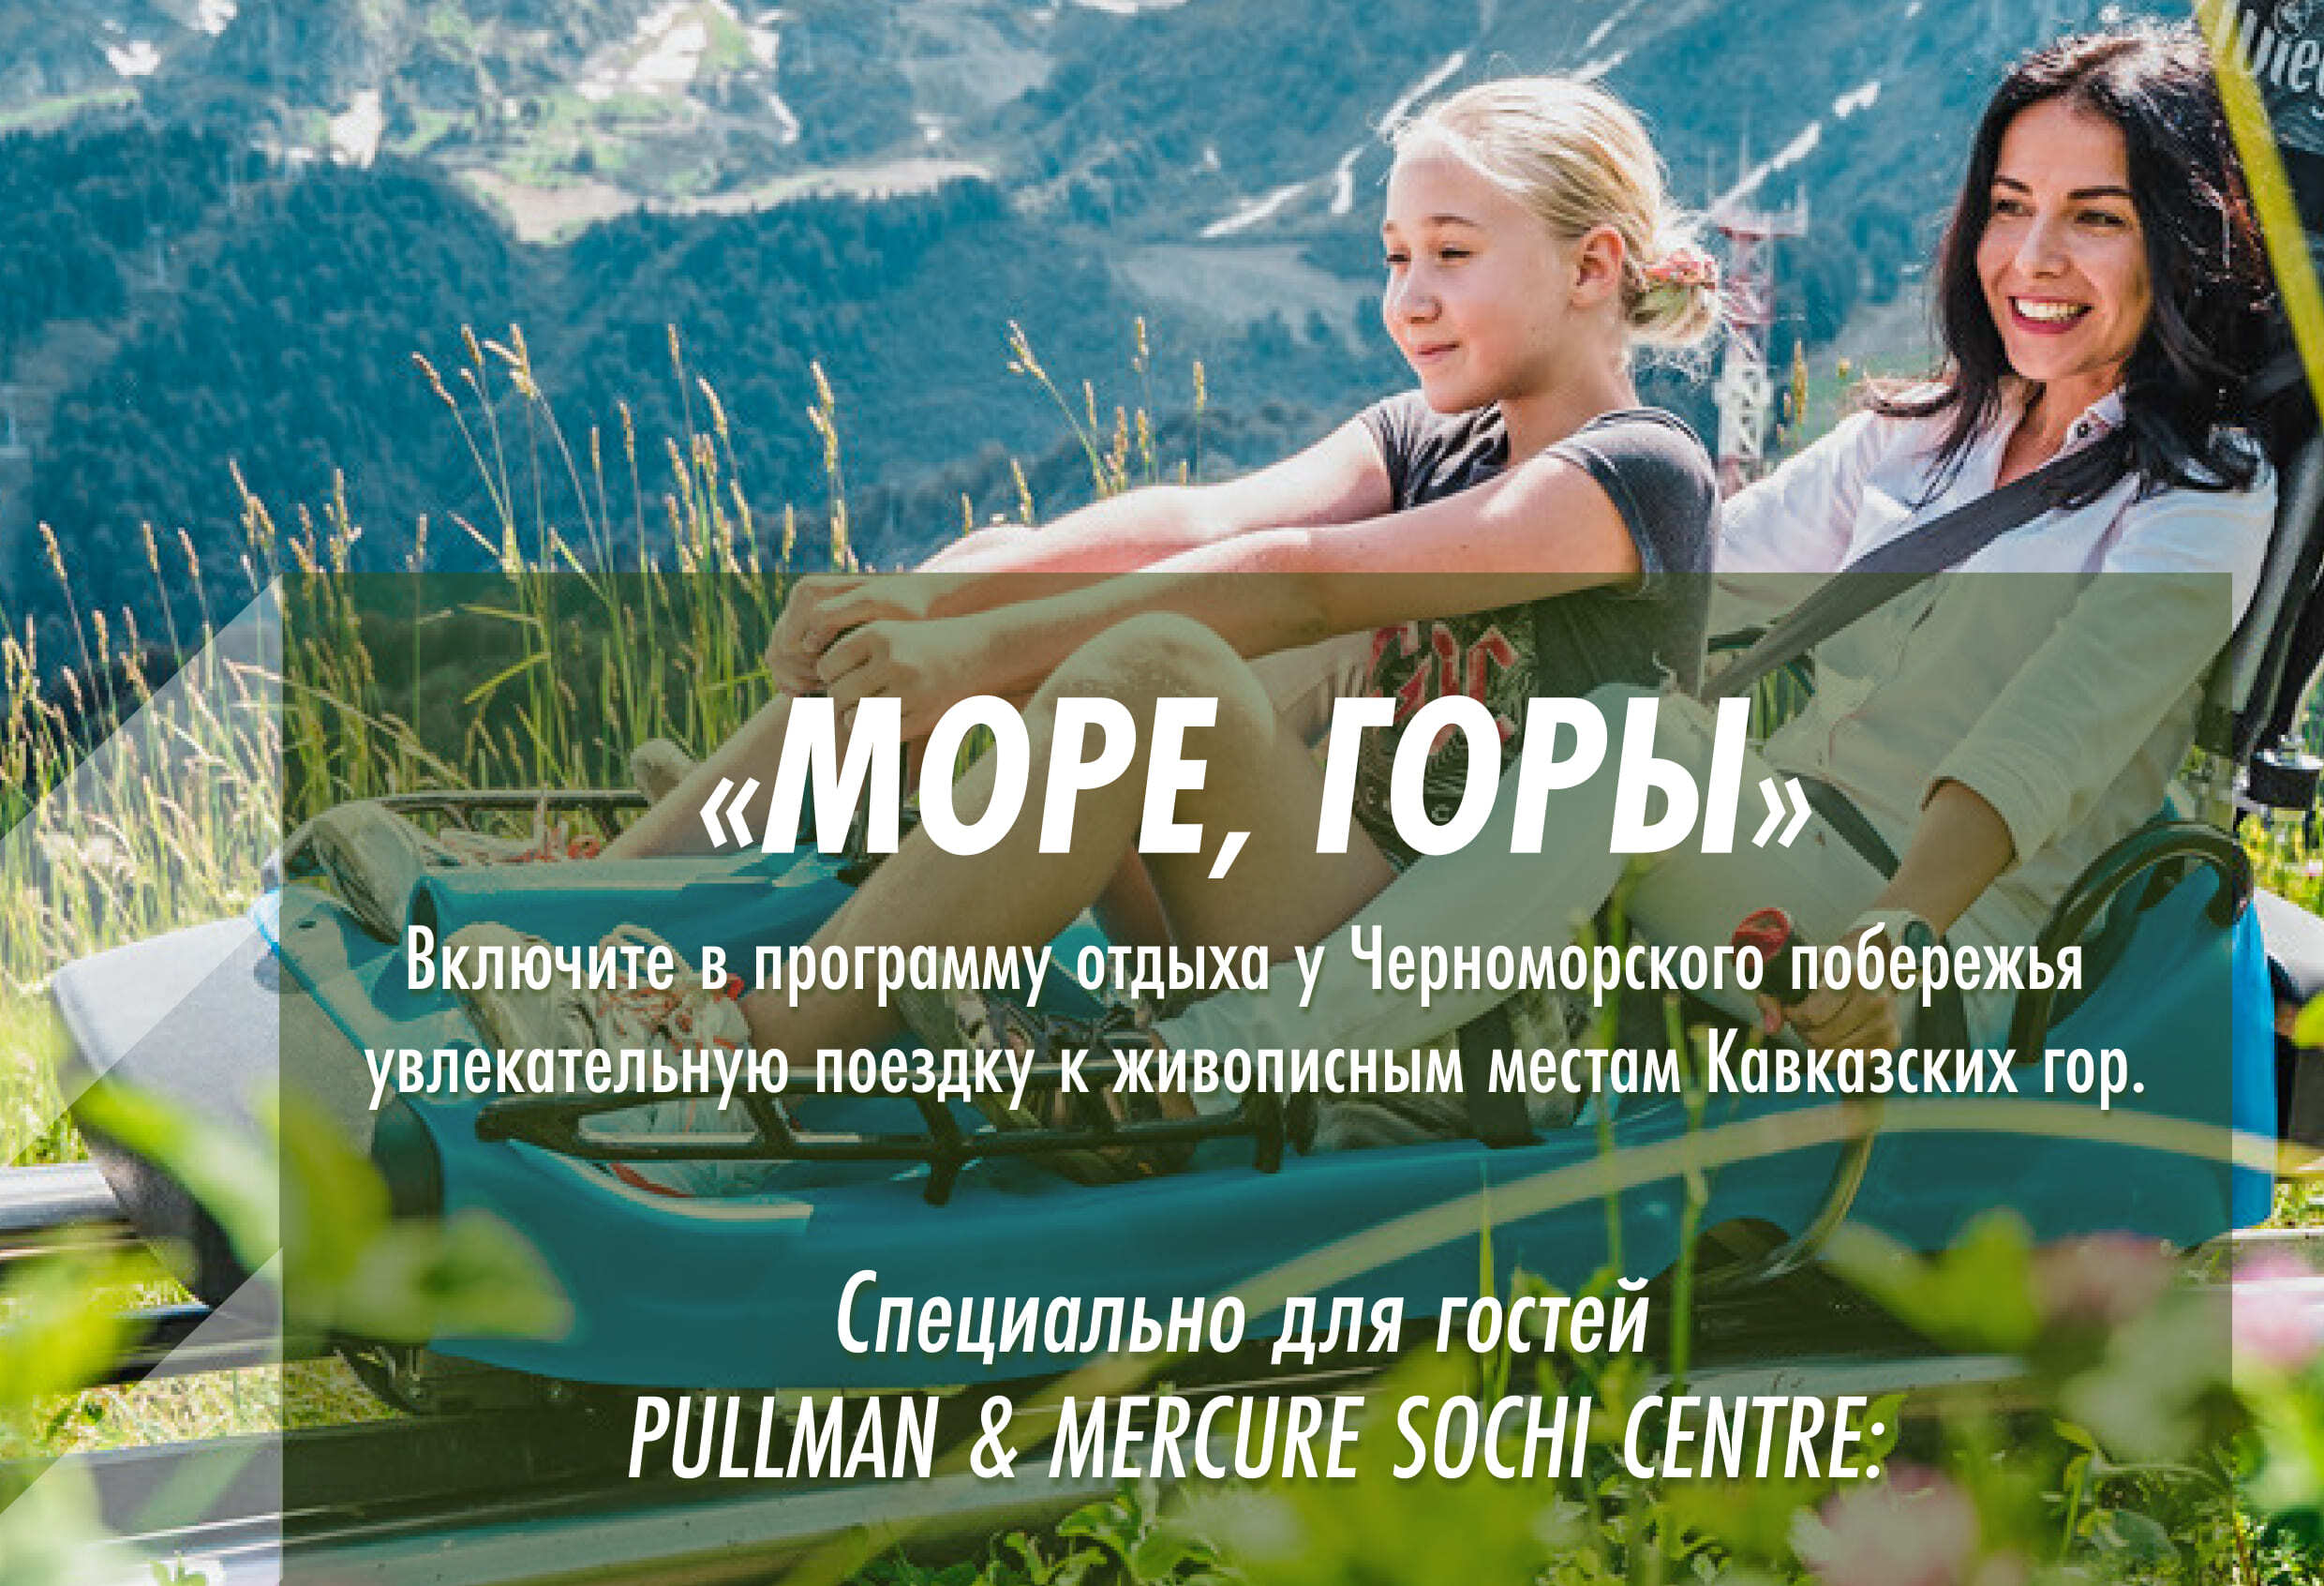 Спецпредложение для гостей отелей Pullman & Mercure Sochi Centre !